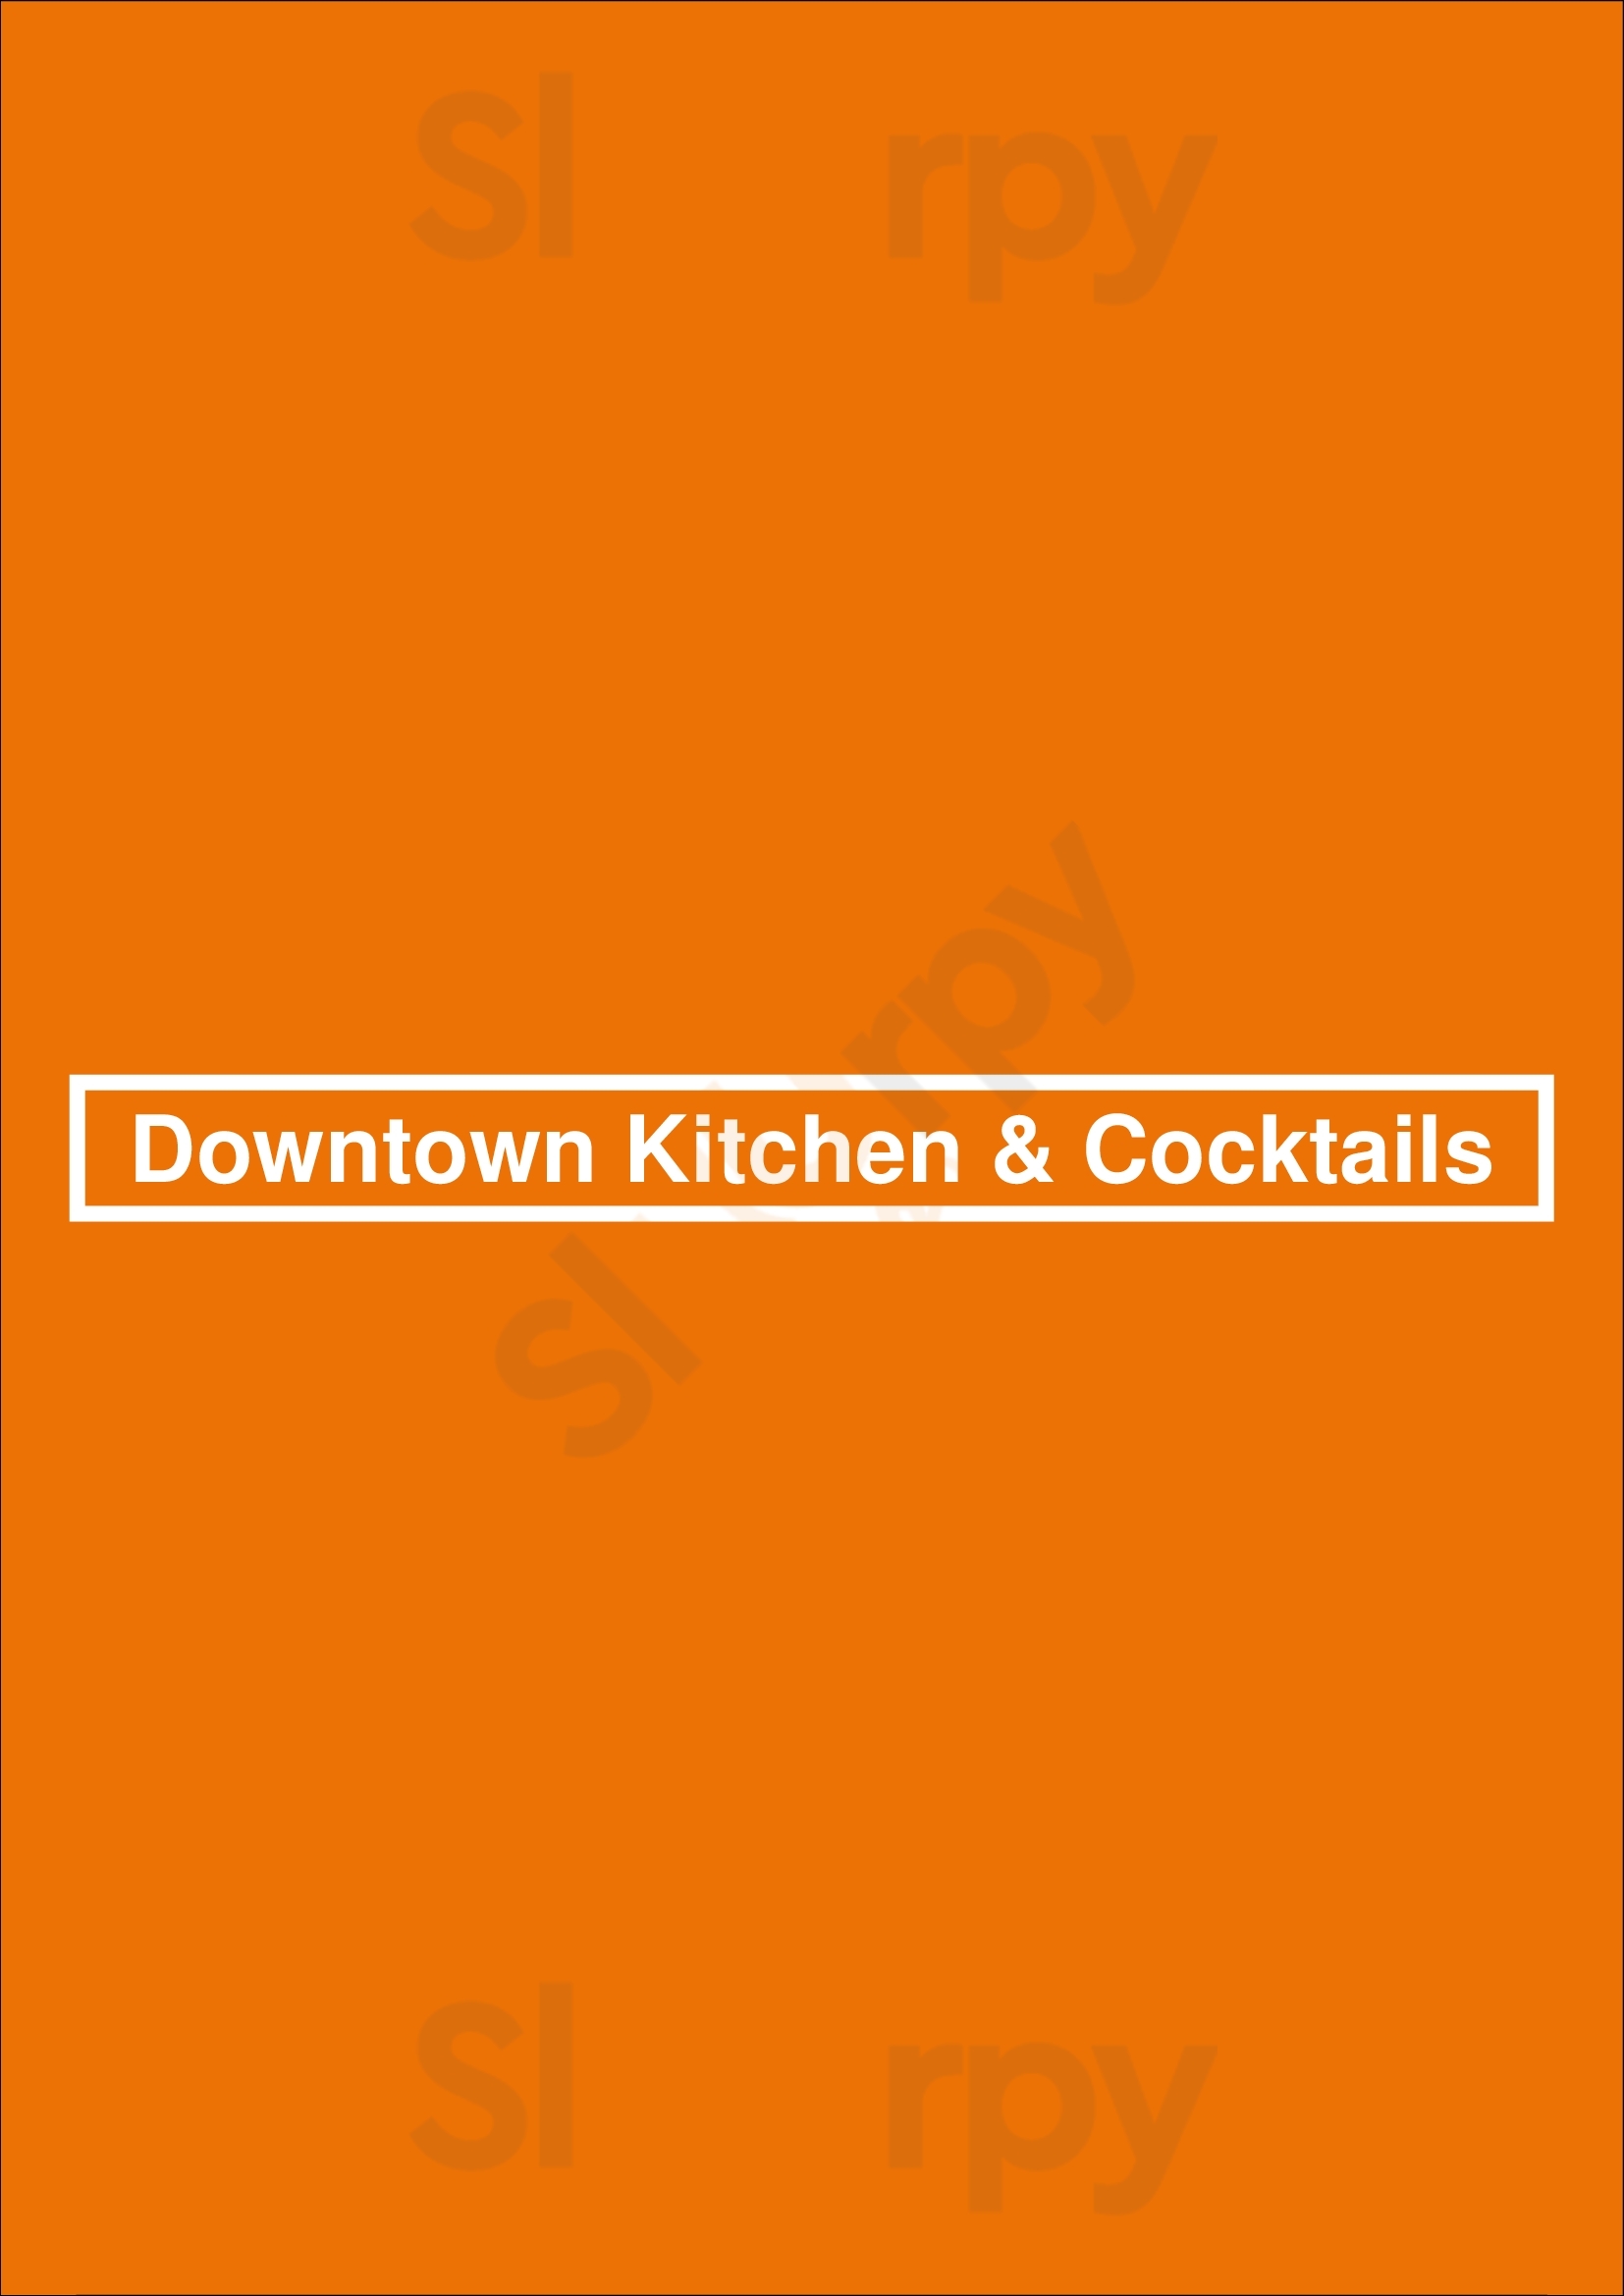 Downtown Kitchen & Cocktails Tucson Menu - 1